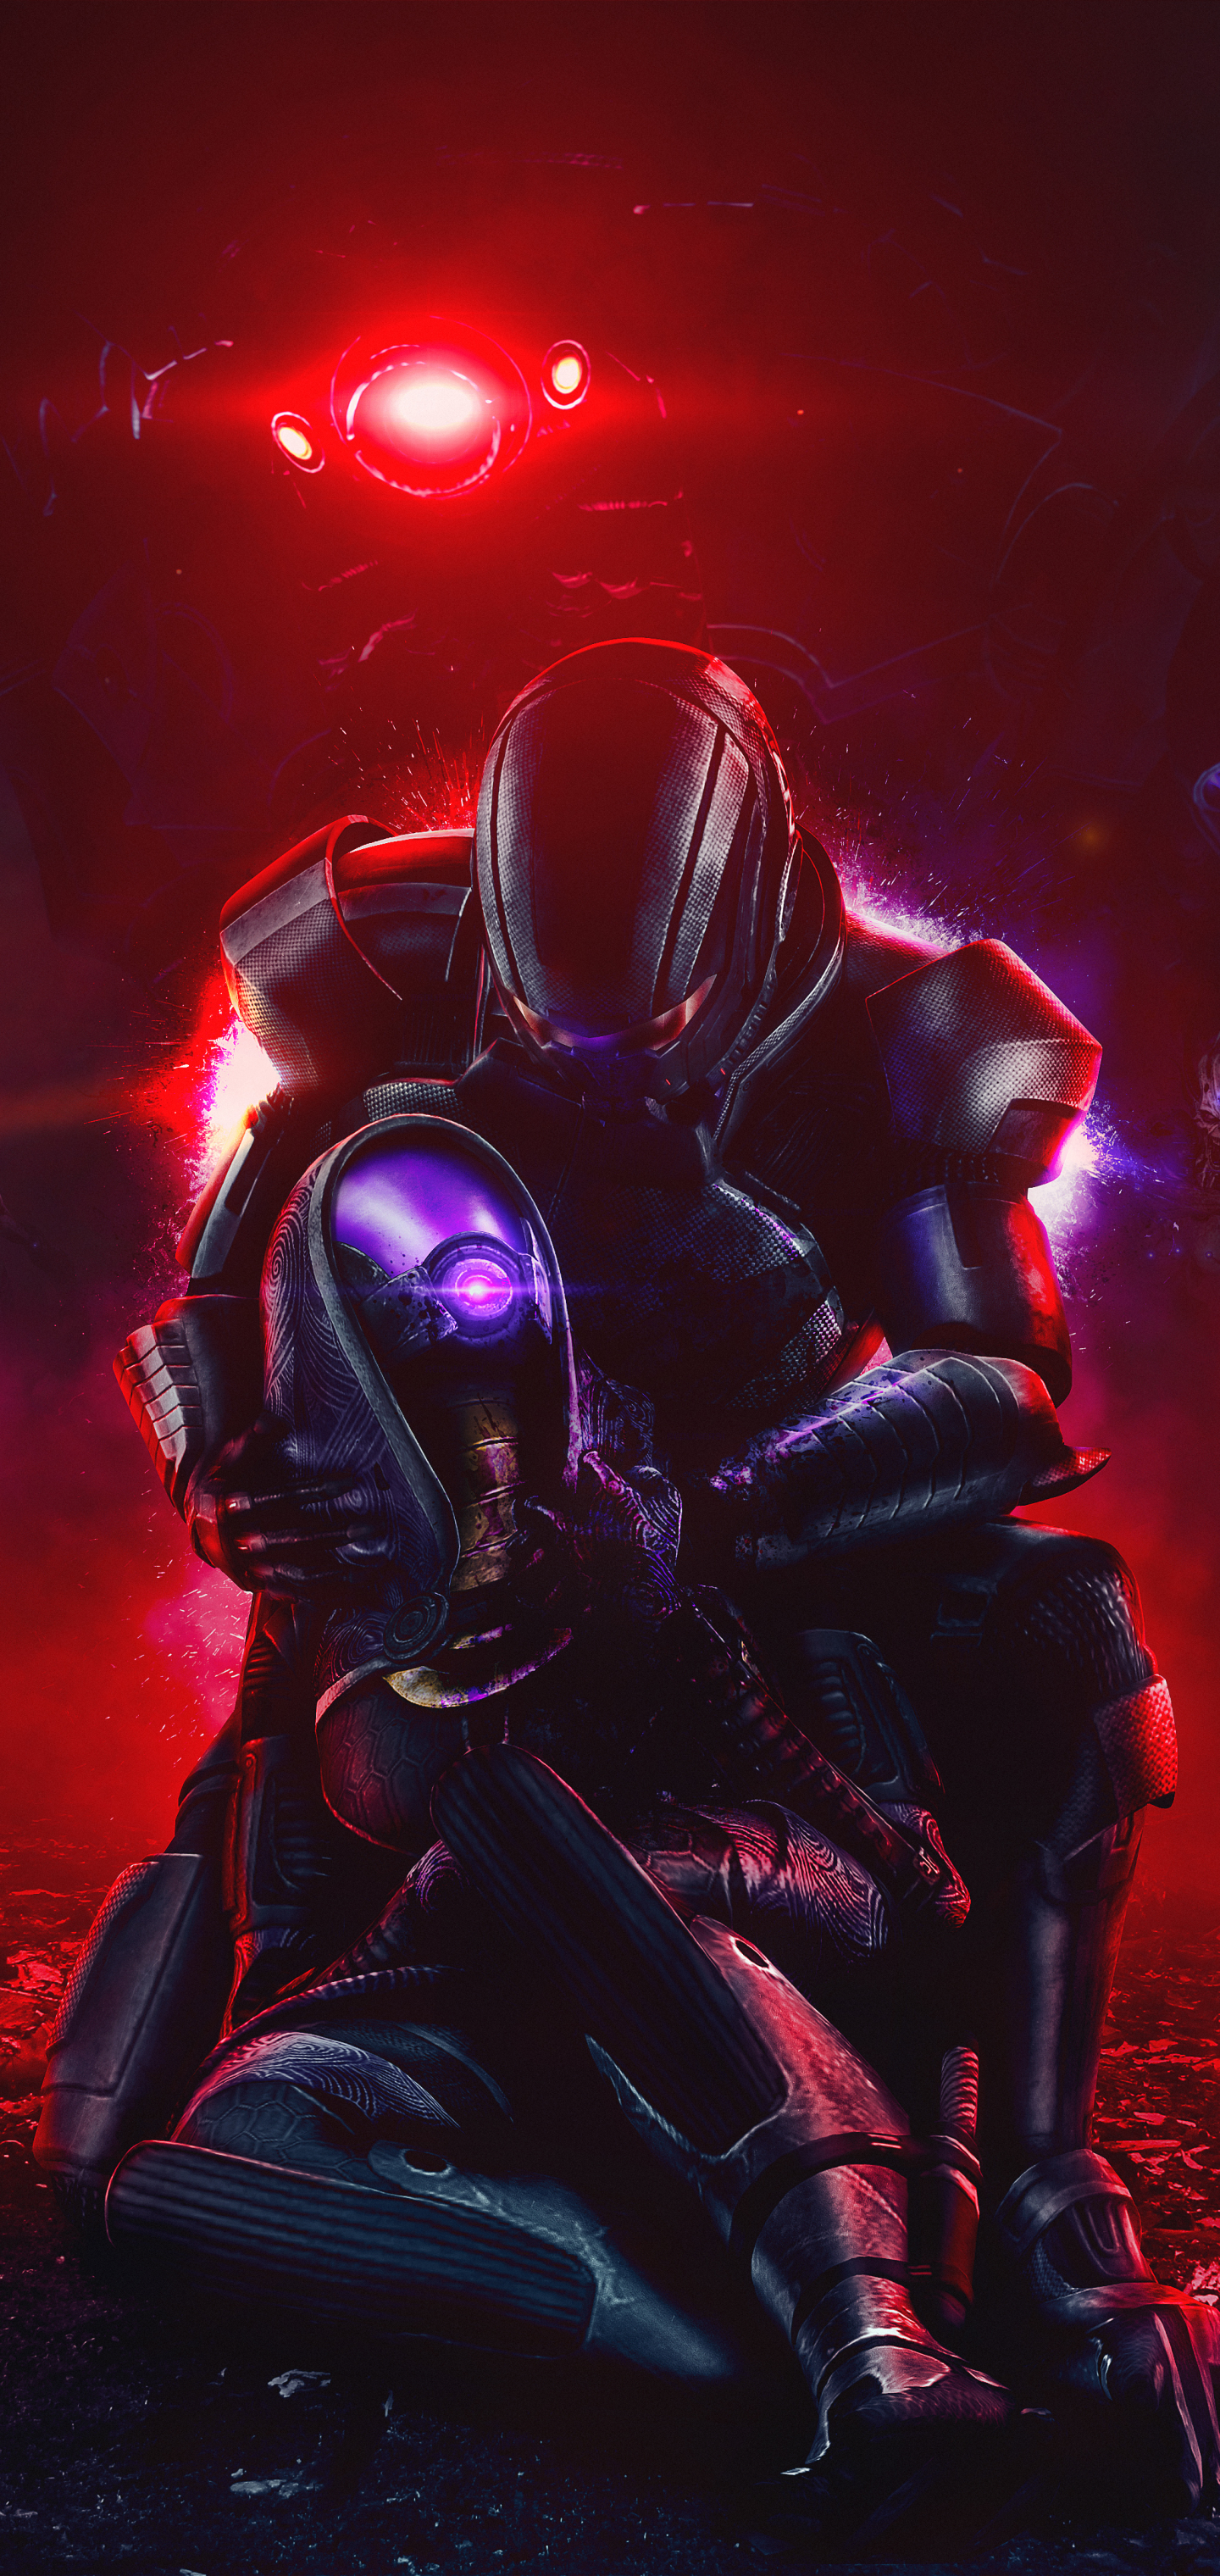 Descarga gratuita de fondo de pantalla para móvil de Mass Effect, Videojuego, Tali'zorah, Comandante Shepard.